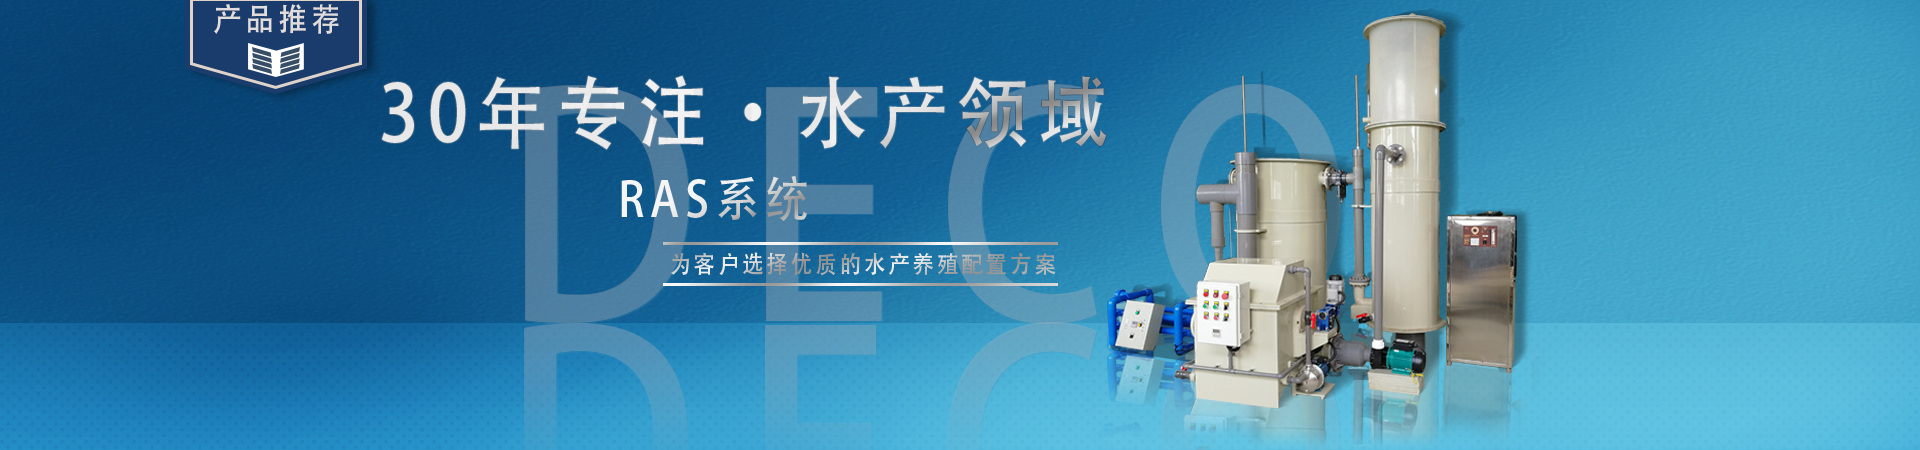 郑州网联计算机系统服务有限公司